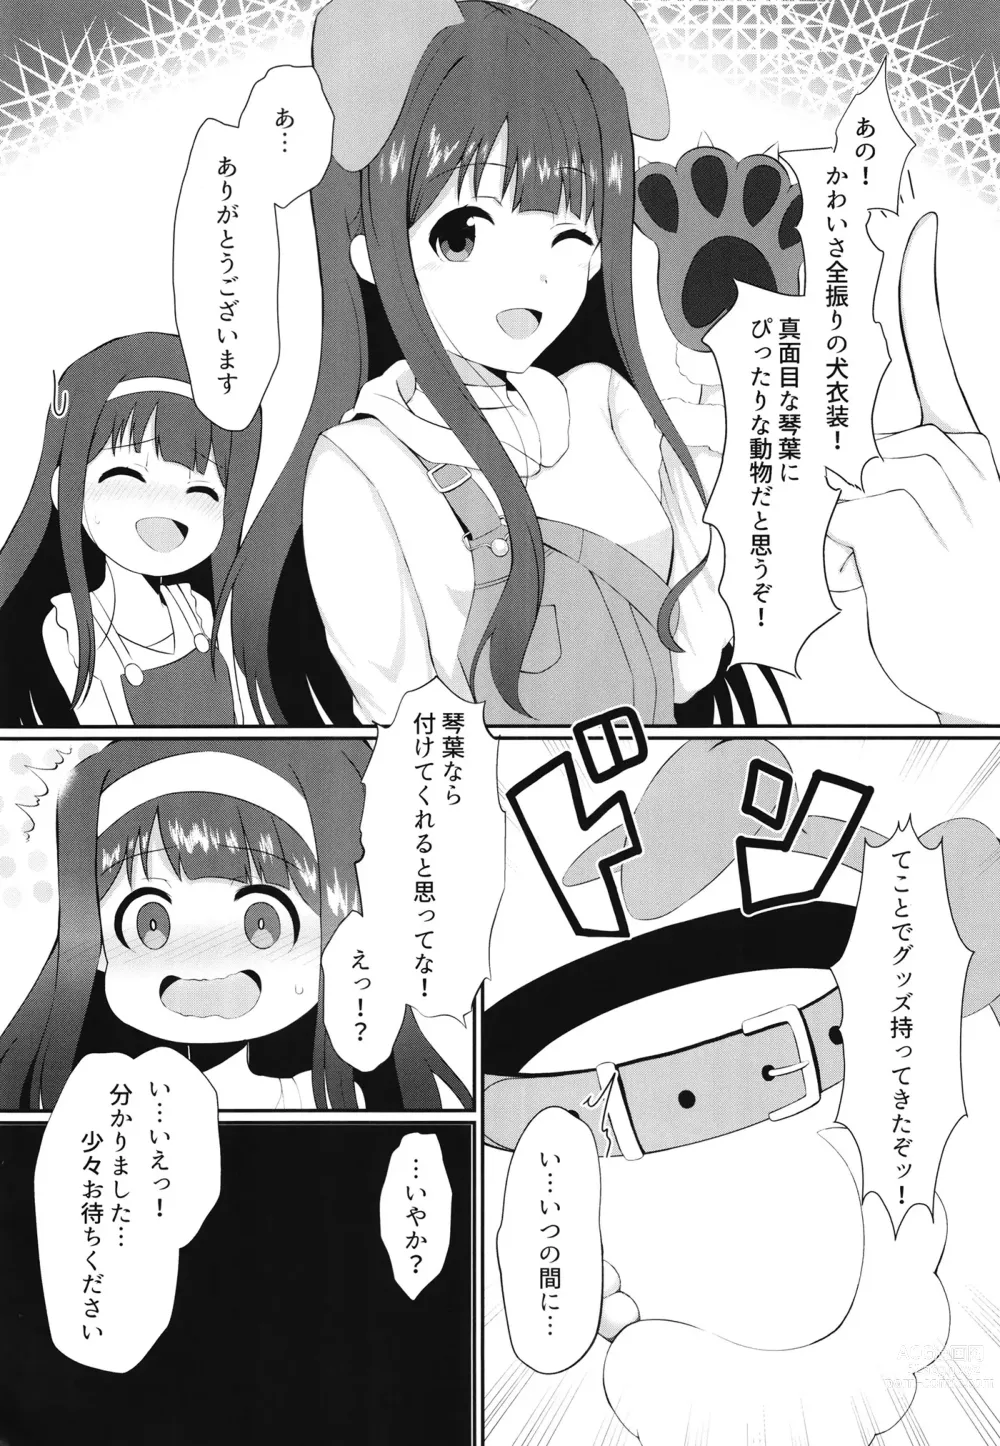 Page 4 of doujinshi Watashi Waruiko desu kara.